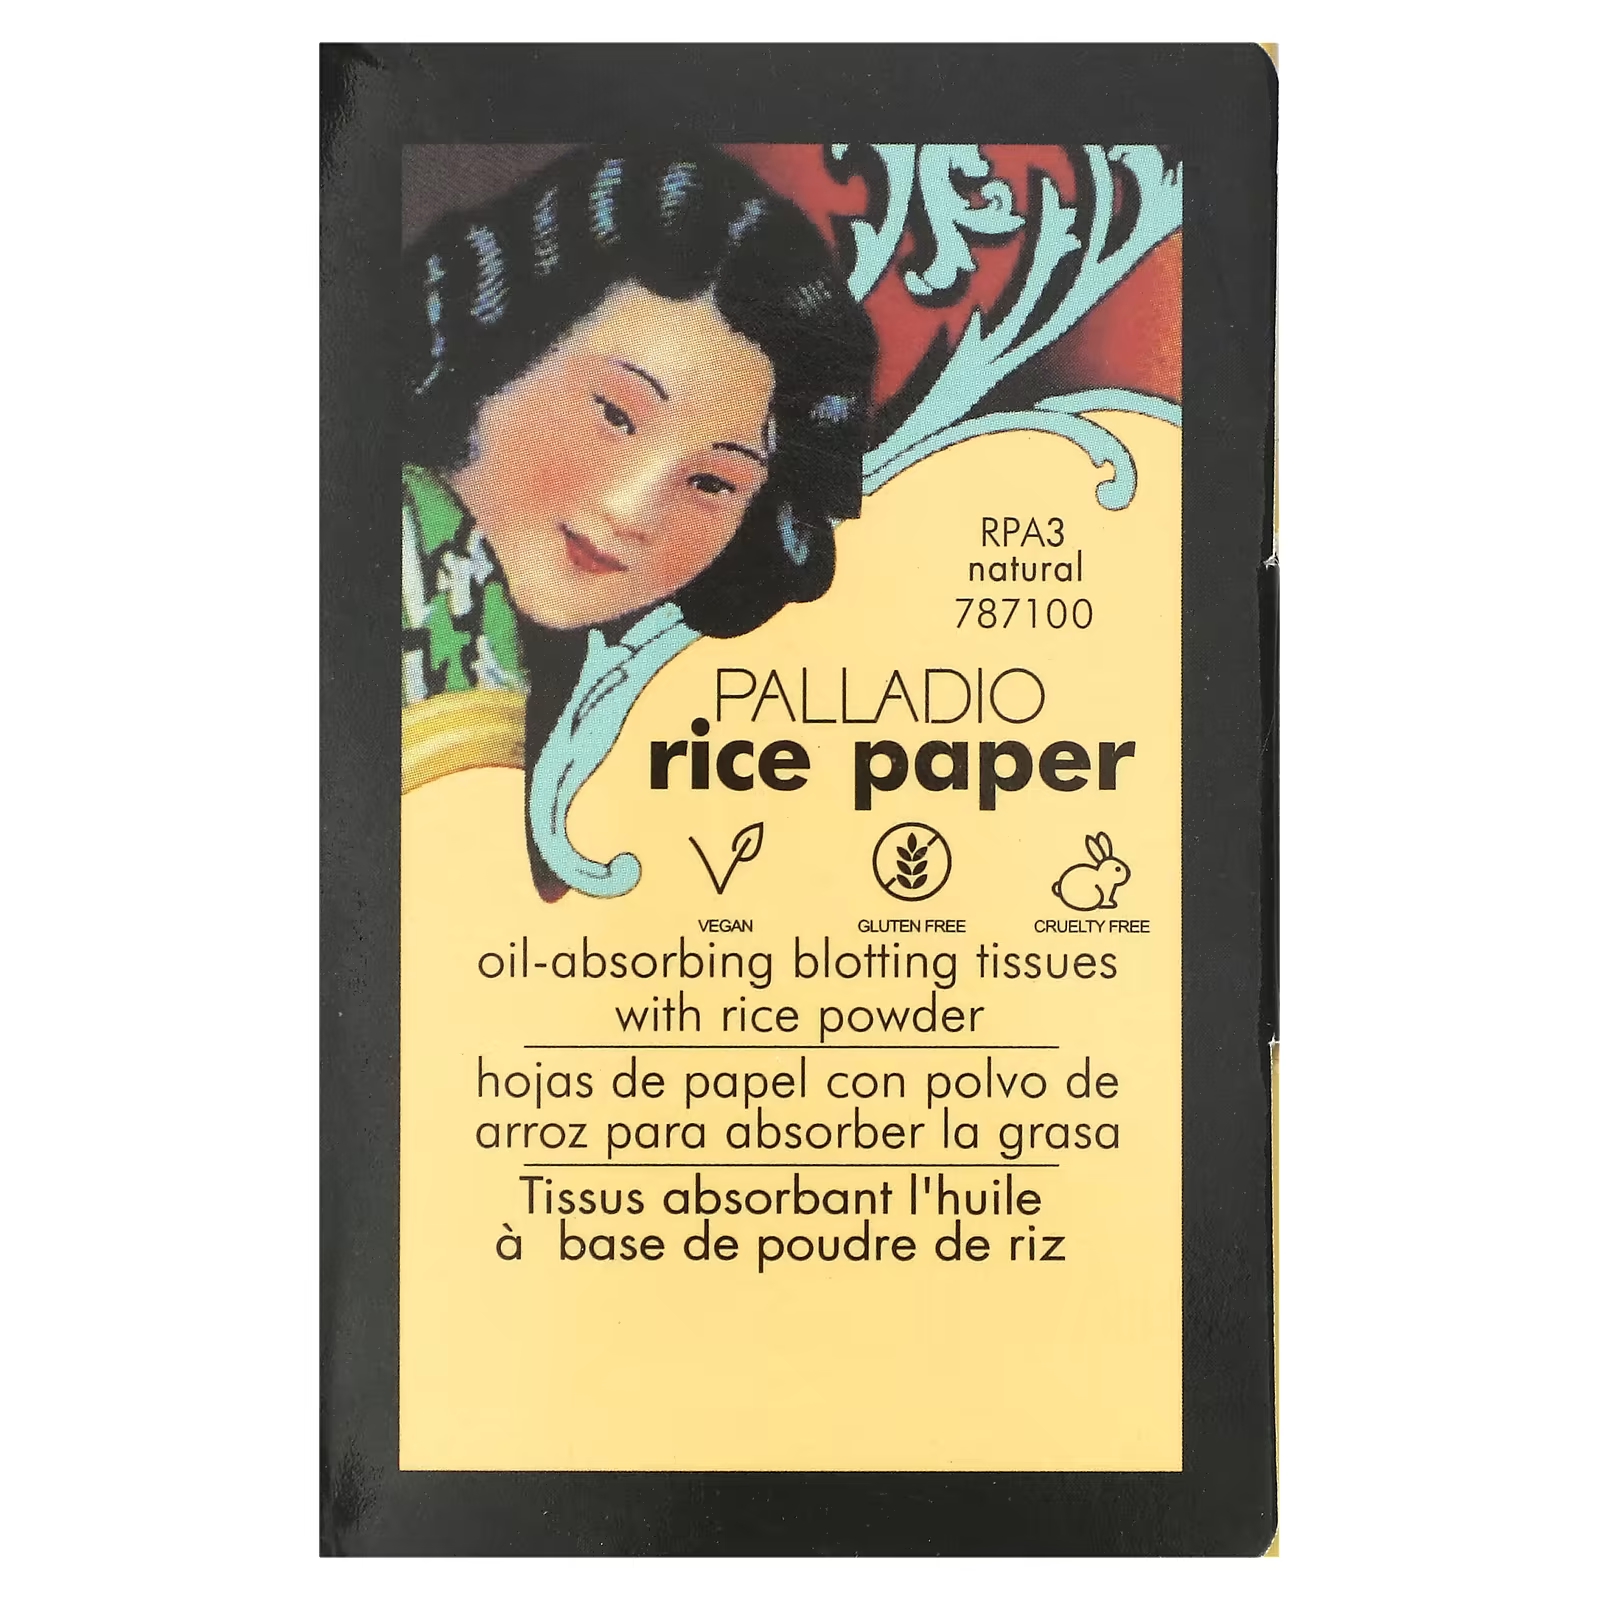 Рисовая бумага Palladio, маслопоглощающие промокательные салфетки, натуральные RPA3, 40 салфеток